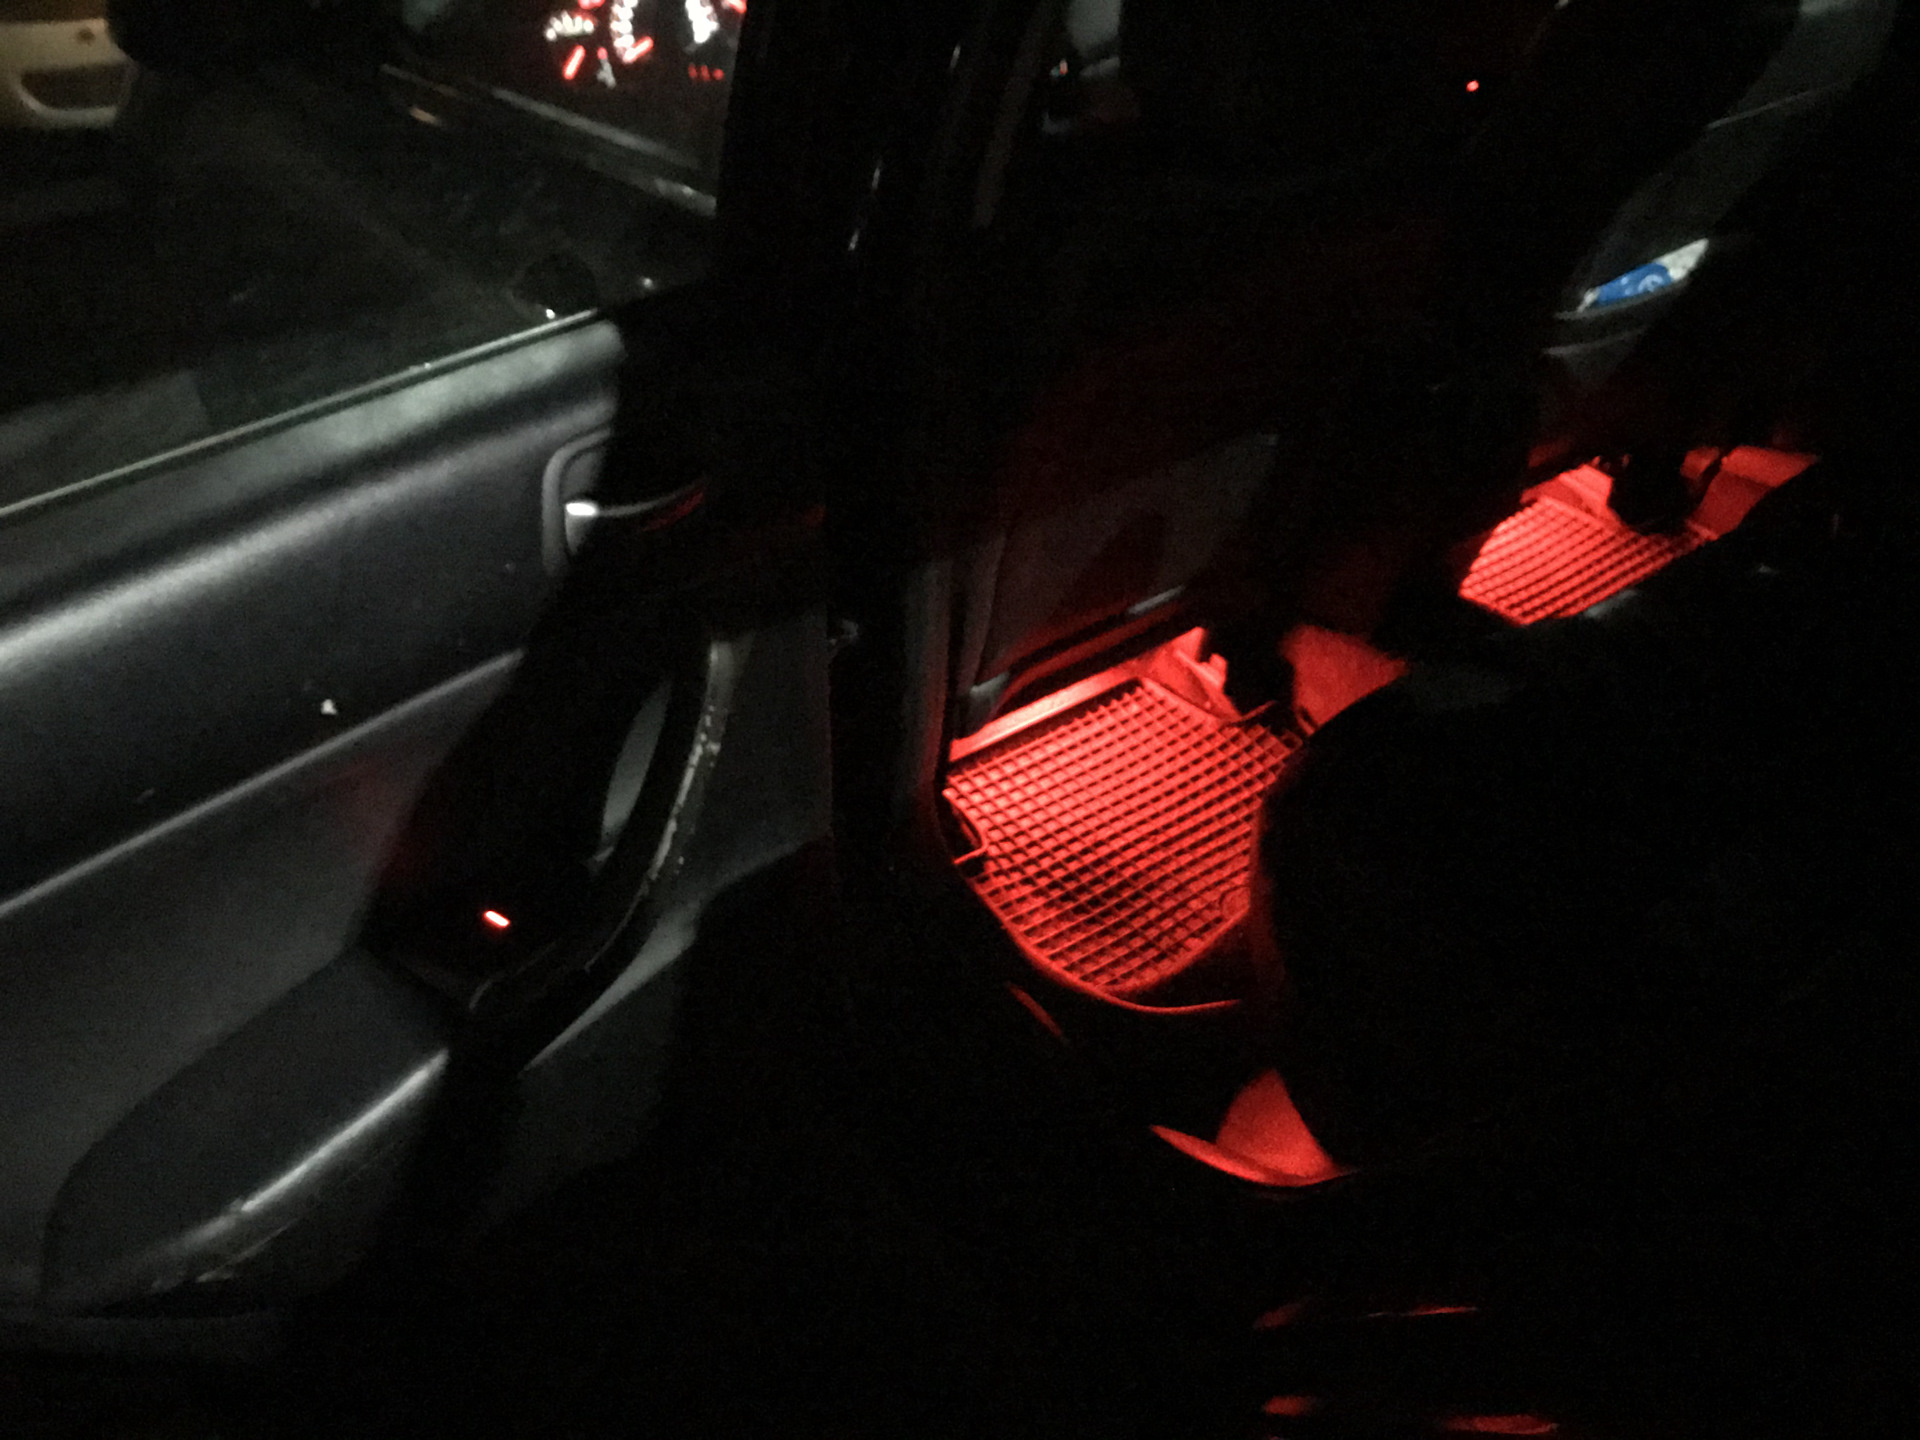 Подсветка мазда сх5. Подсветка ног авто Mazda CX 5. Подсветка ног Соната dn8. Подсветка ног Мерседес w203. Подсветка дверей CRV 2002.